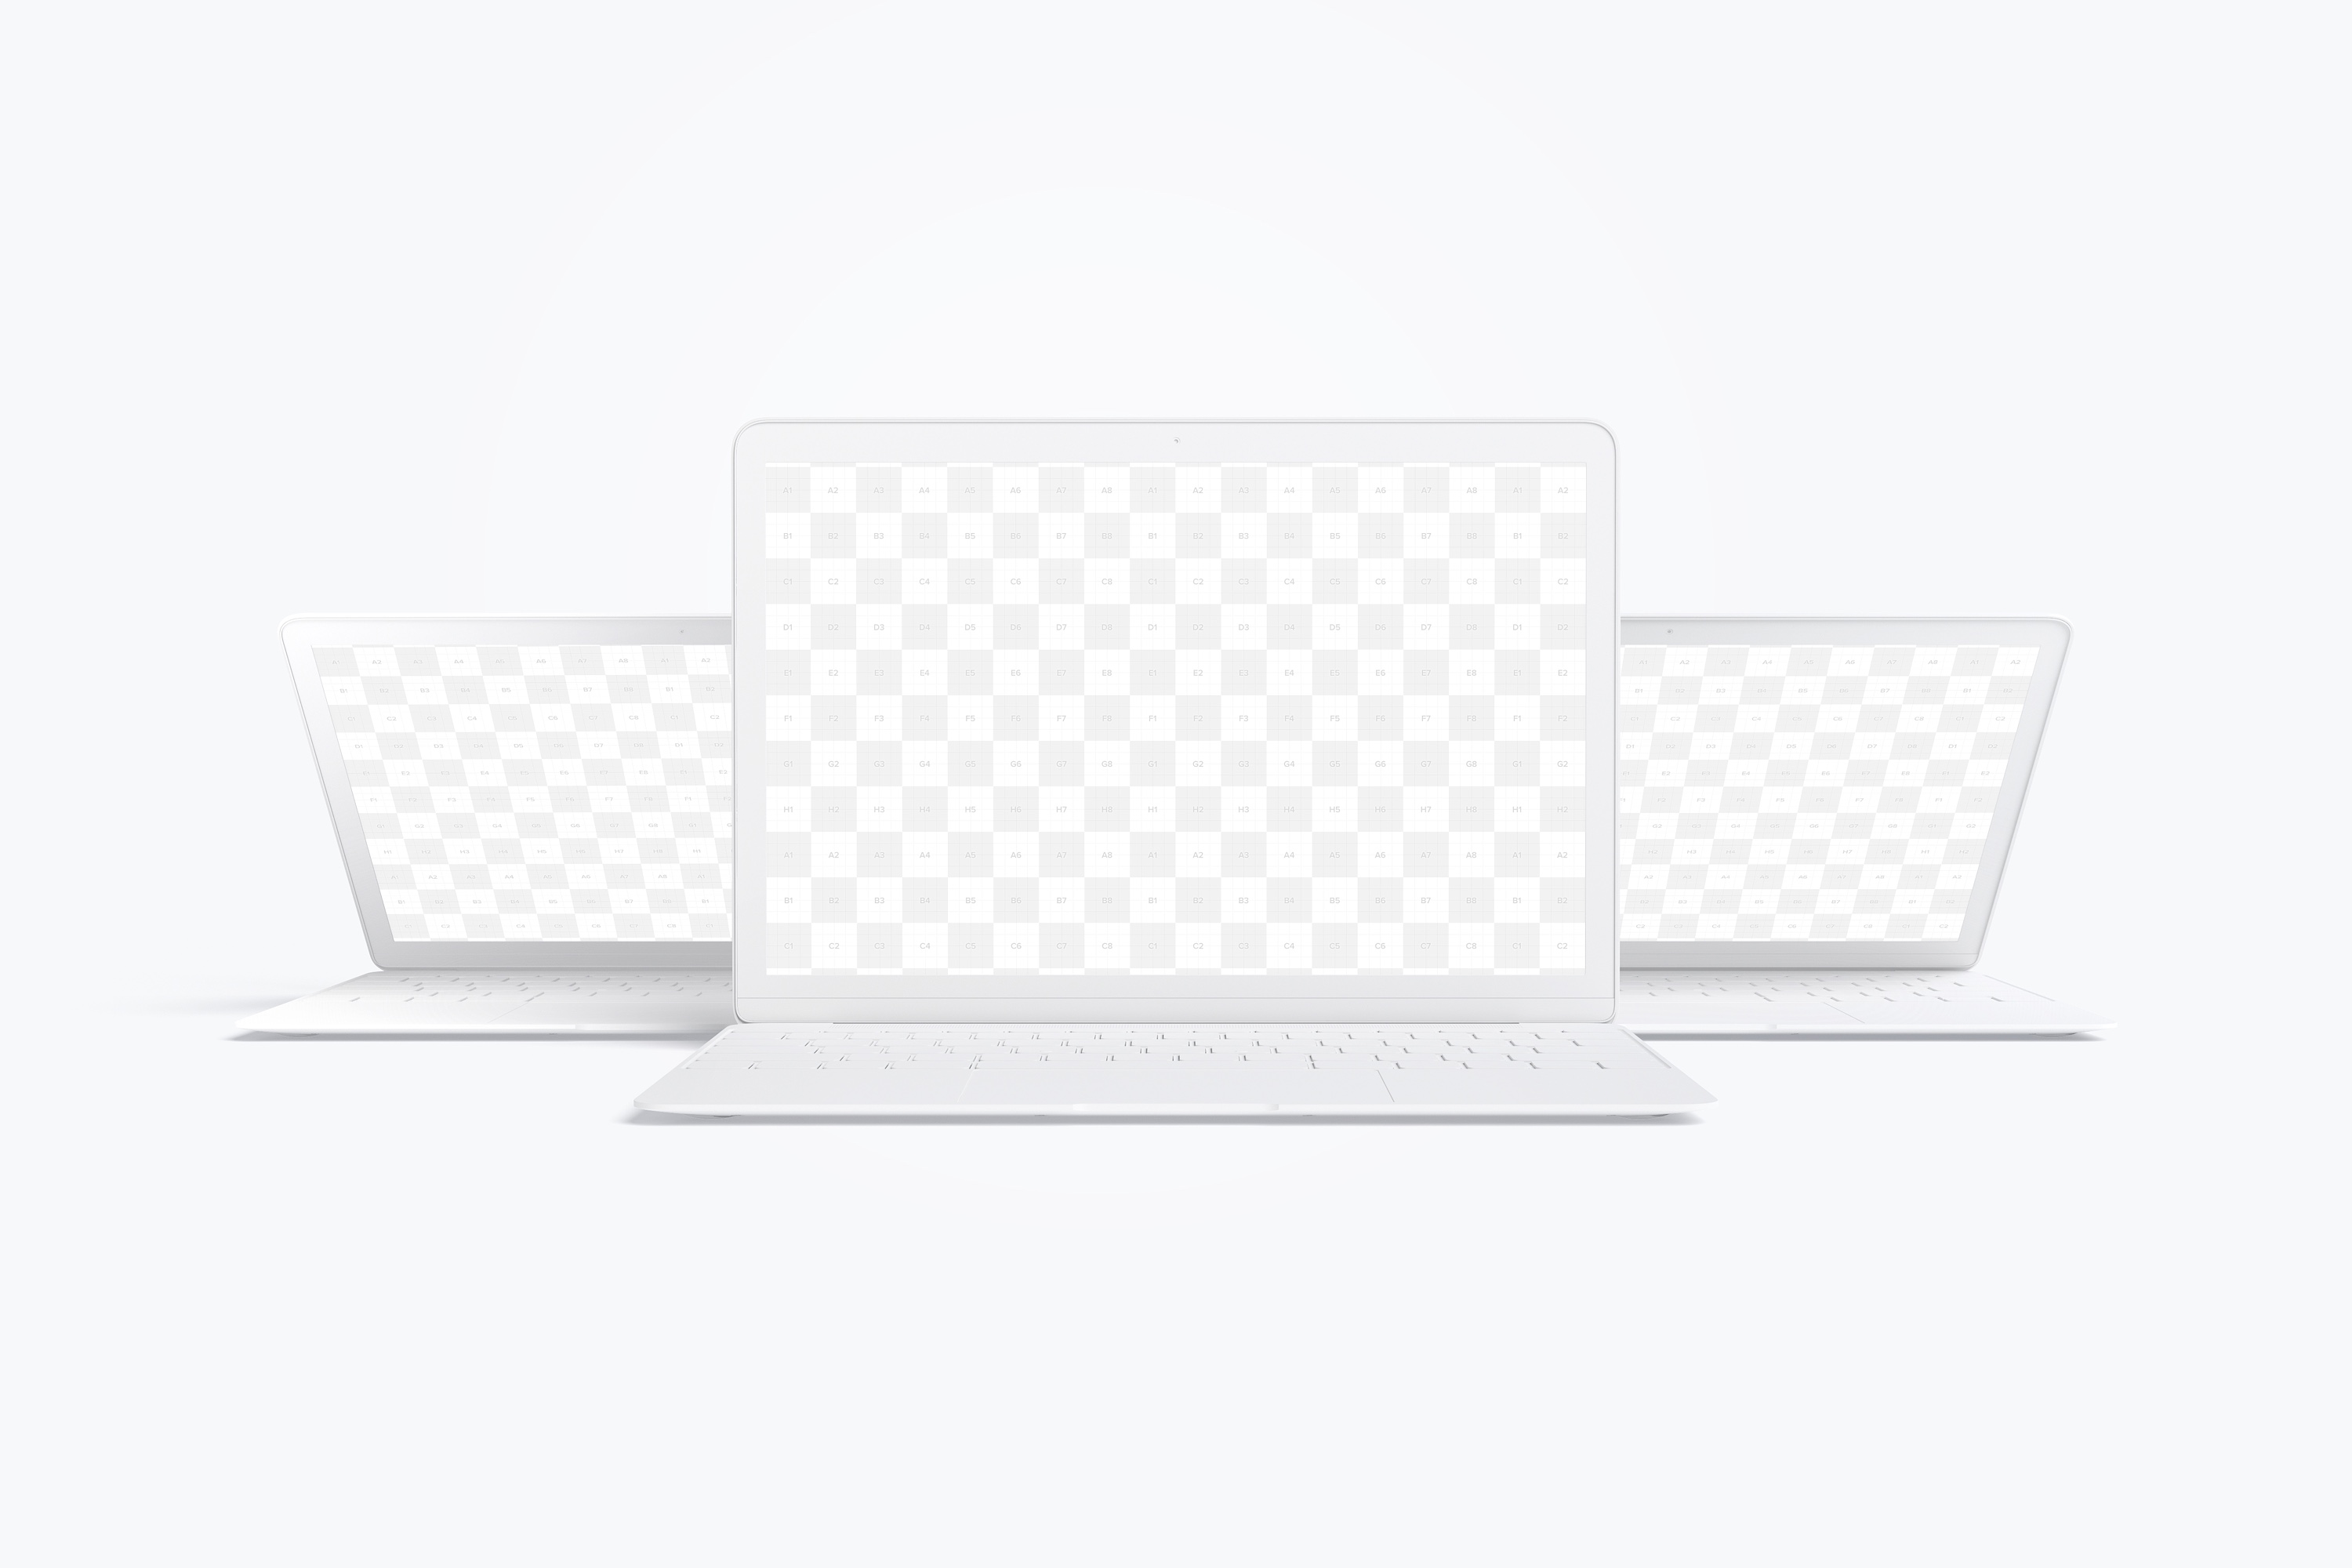 MacBook笔记本电脑多屏幕预览前视图样机03 Clay MacBook Mockup, Front View 03插图